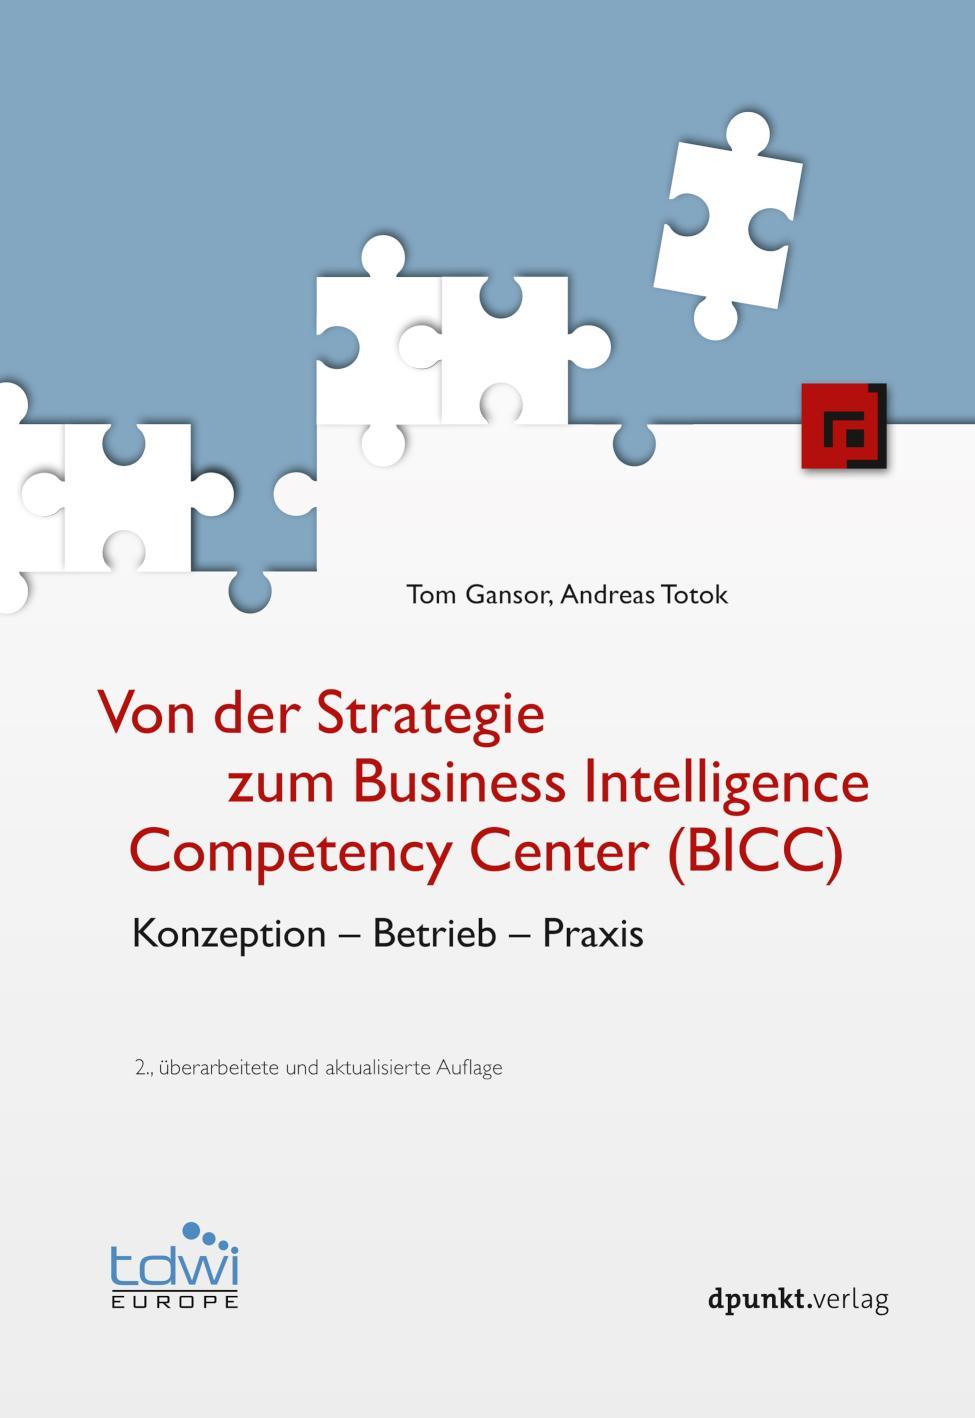 Von der Strategie zum Business Intelligence Competency Center (BICC) Konzeption - Betrieb - Praxis